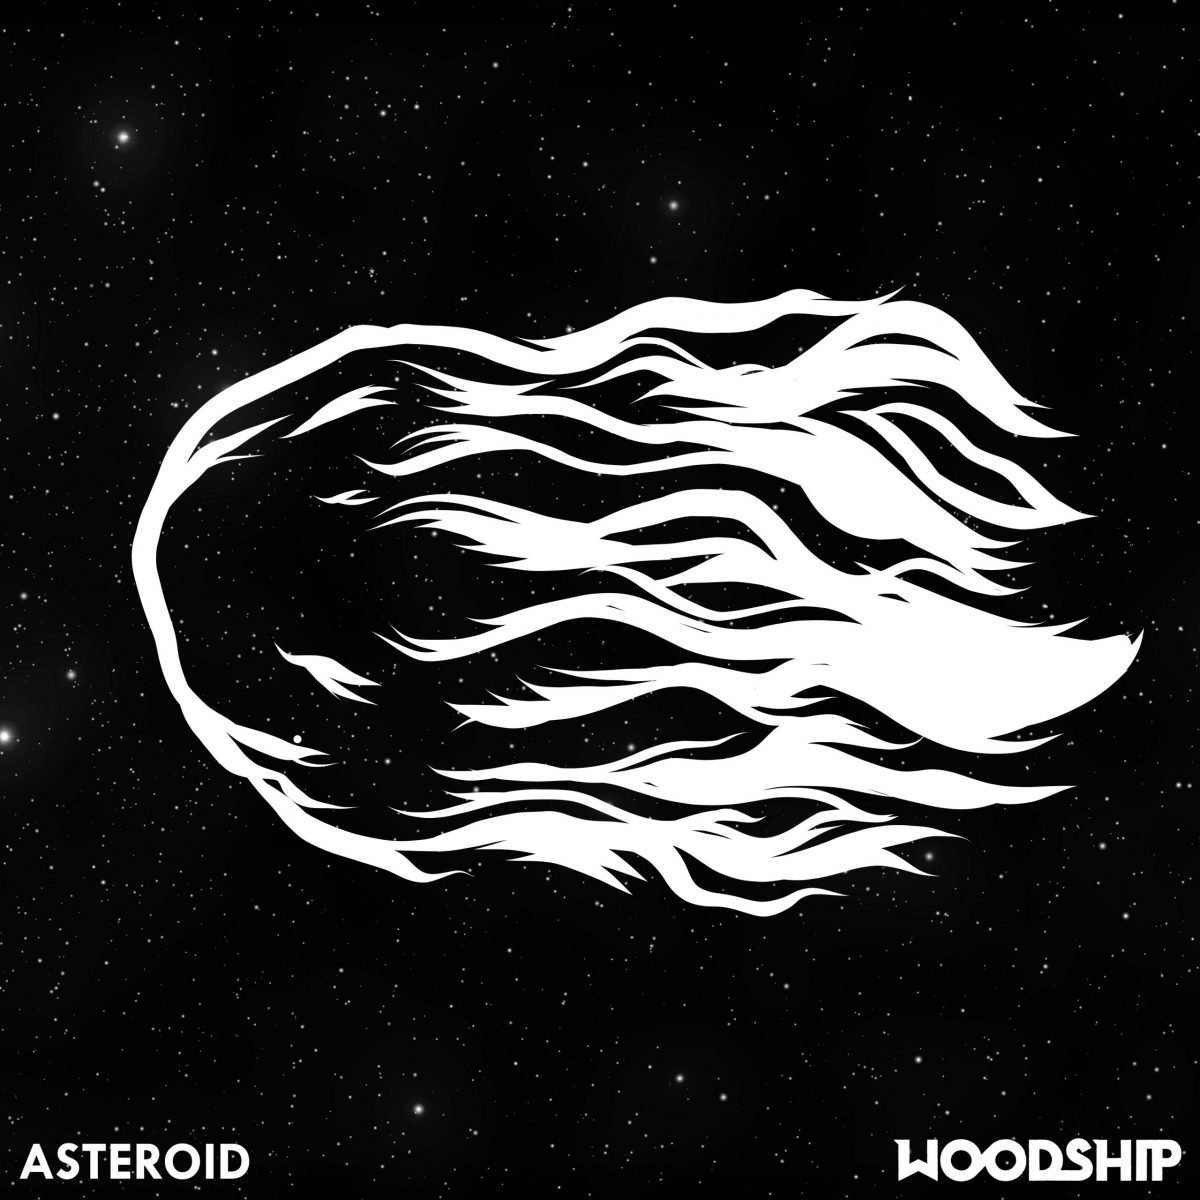 woodship-veroeffentlichen-asteroid-und-kuendigen-neue-ep-inklusive-tour-an-news